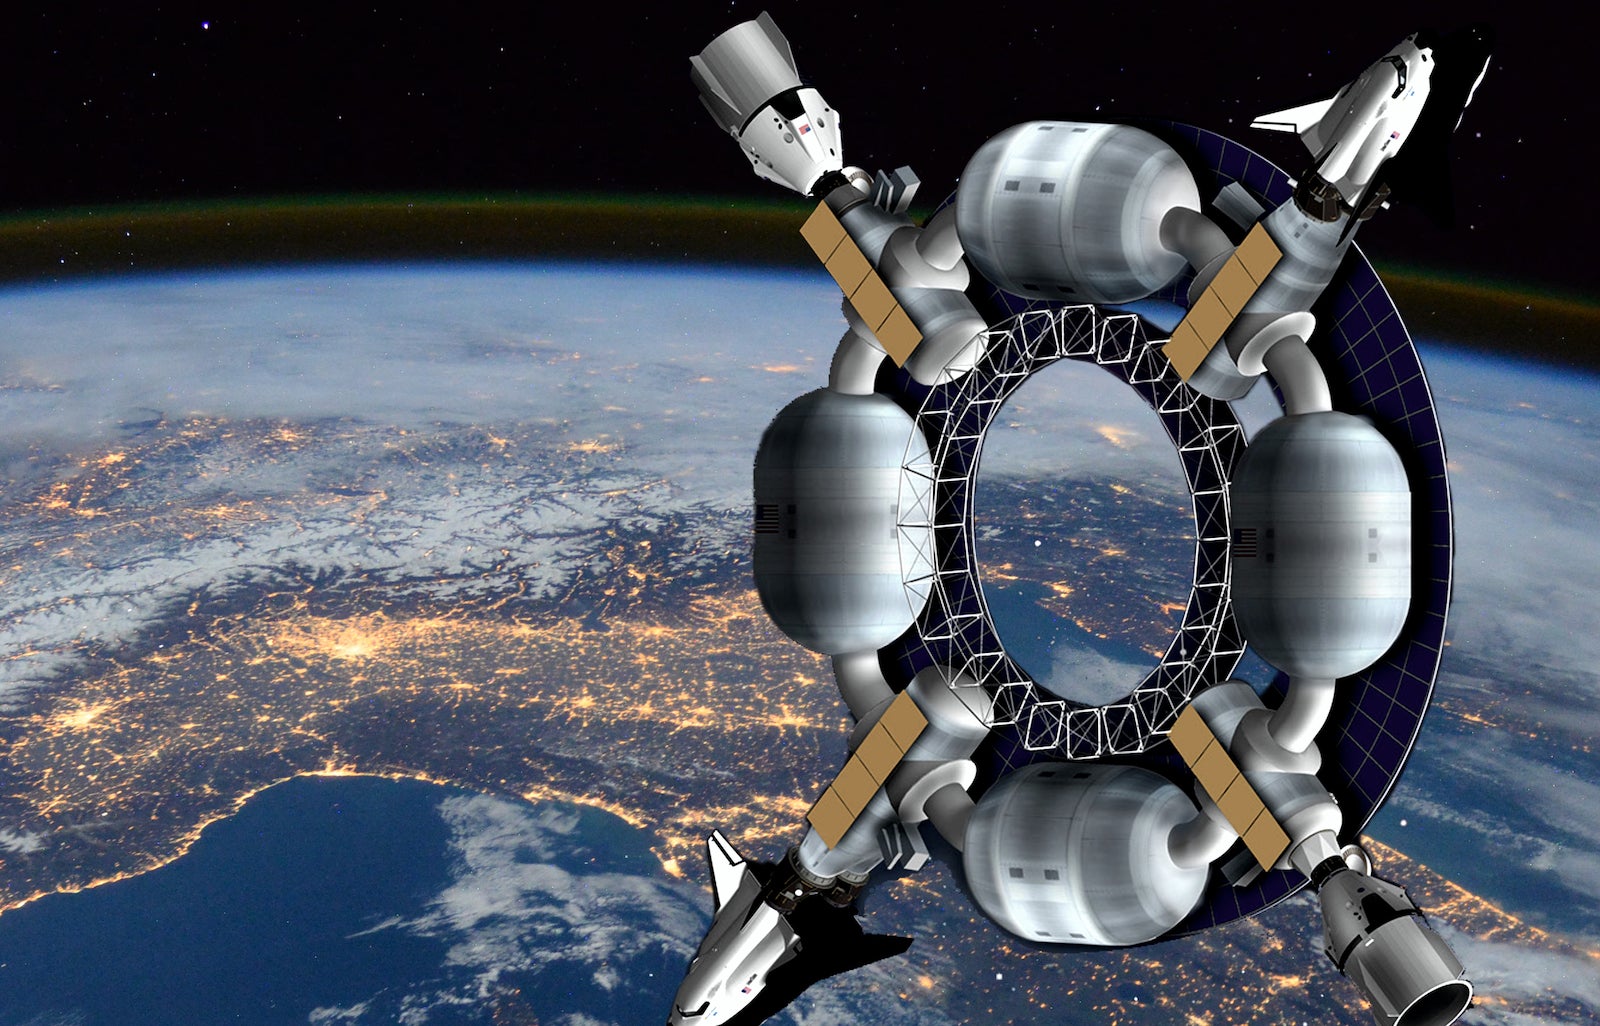 Orbital pioneer express space hotel